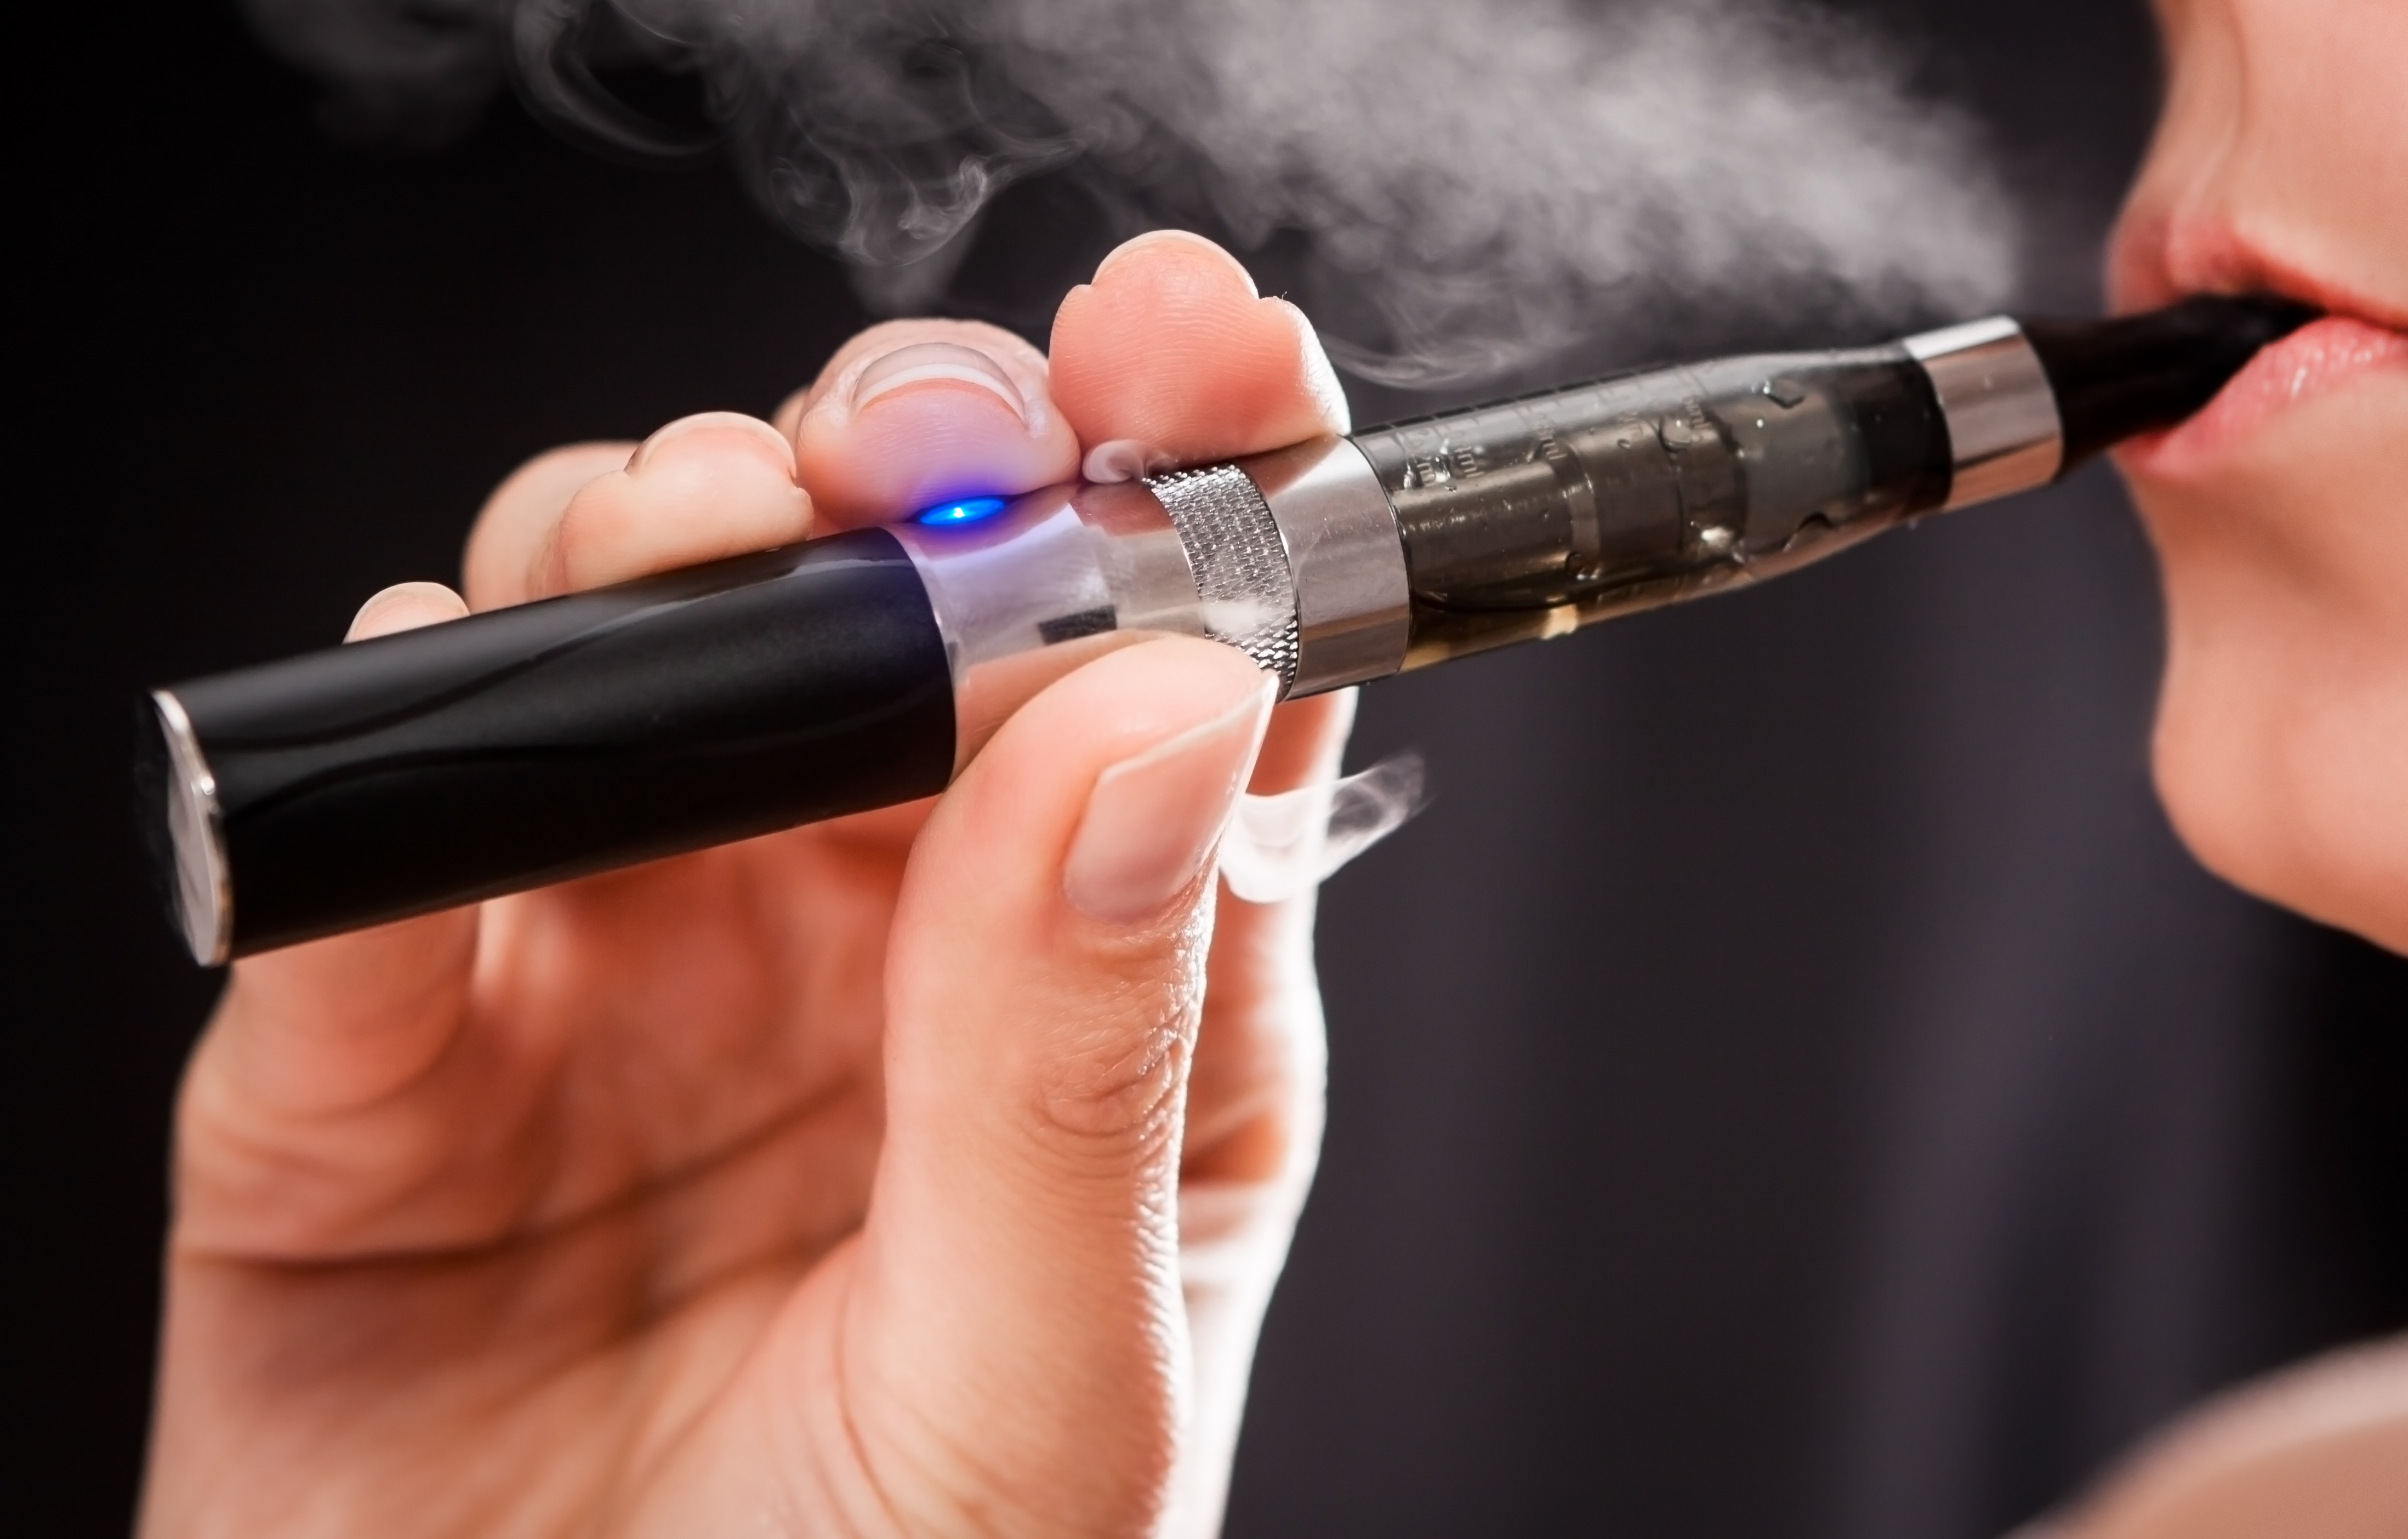 A MOTESZ támogatja az elektronikus cigaretta kereskedelmének szigorúbb szabályozását